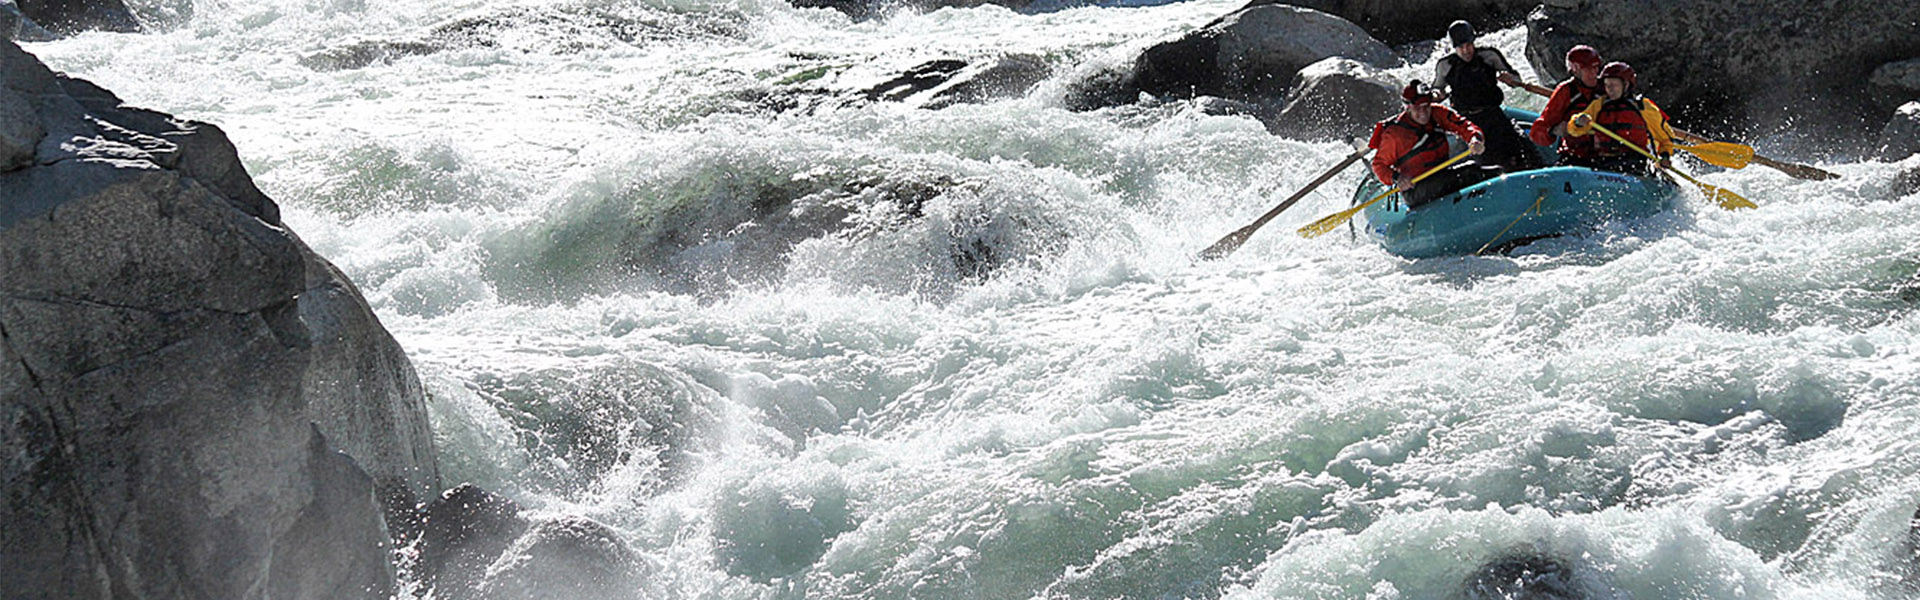 Люди это бурные реки. Rapids. Rapids in the River. Tornionjoki Rapids. Фото рядом с порогами водными.